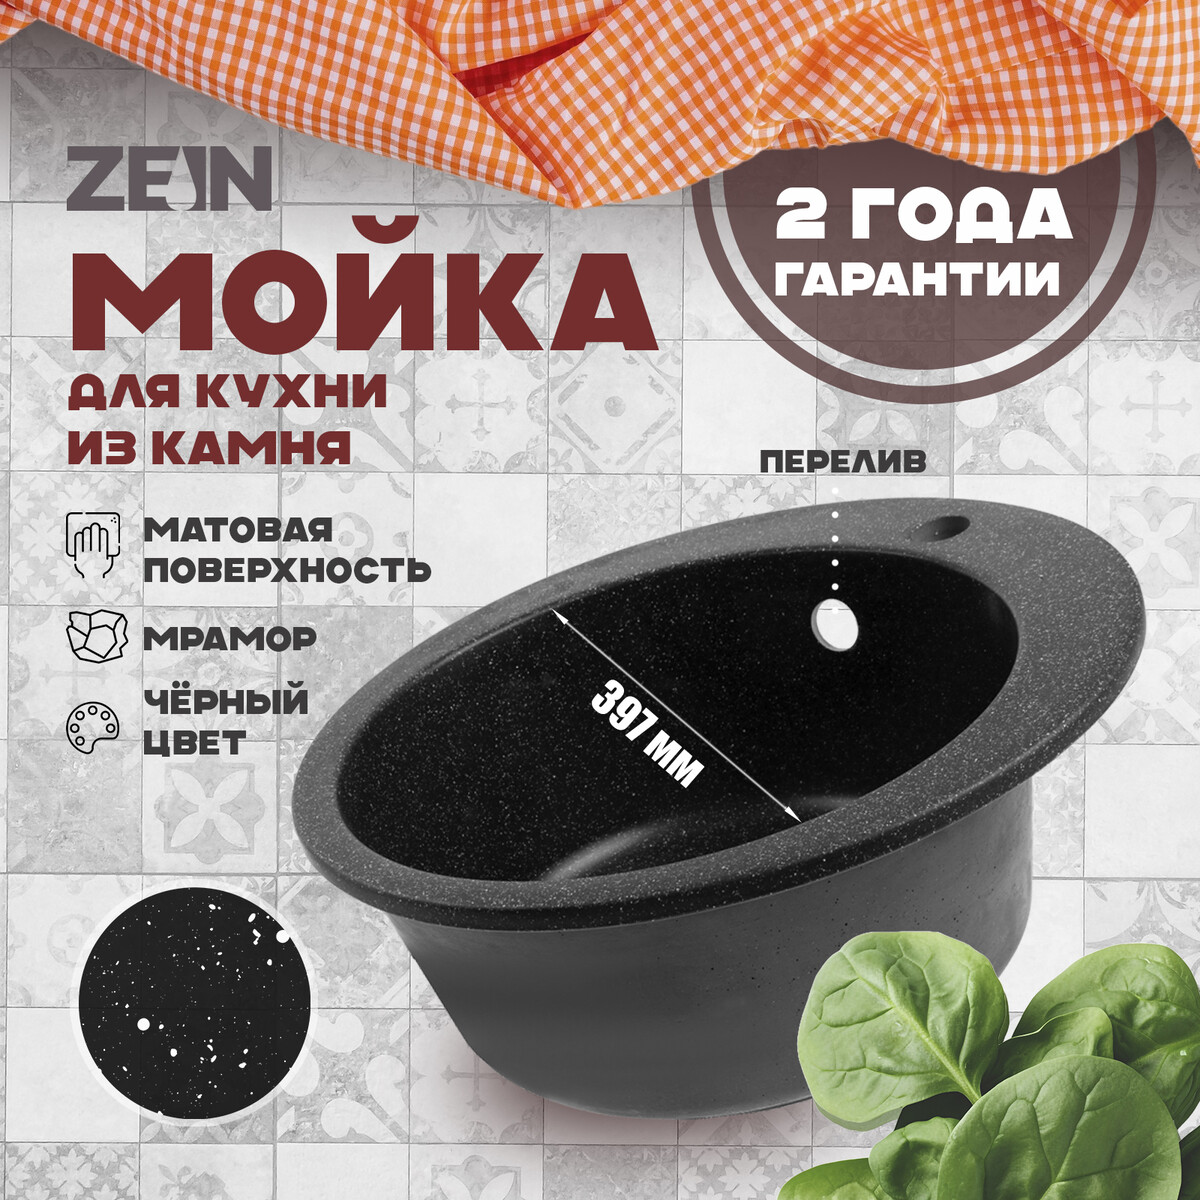 Мойка для кухни из камня zein 510/q4, d=507 мм, круглая, перелив, цвет черный